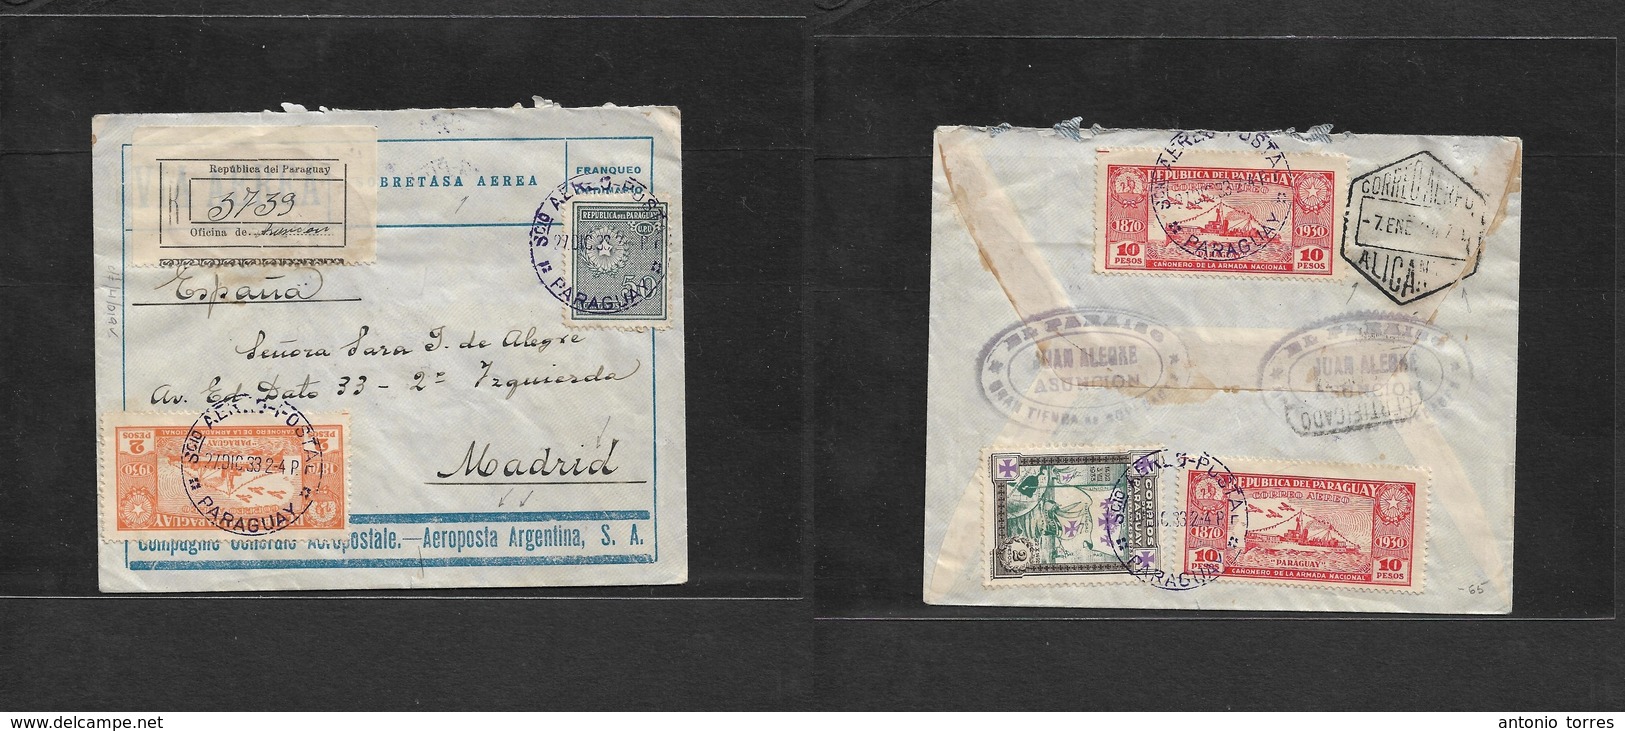 Paraguay. 1933 (27 Dic) Asuncion - Madrid, Spain (9 Enero) Registered Air Multifkd (front + Reverse) Envelope. Via Frenc - Paraguay